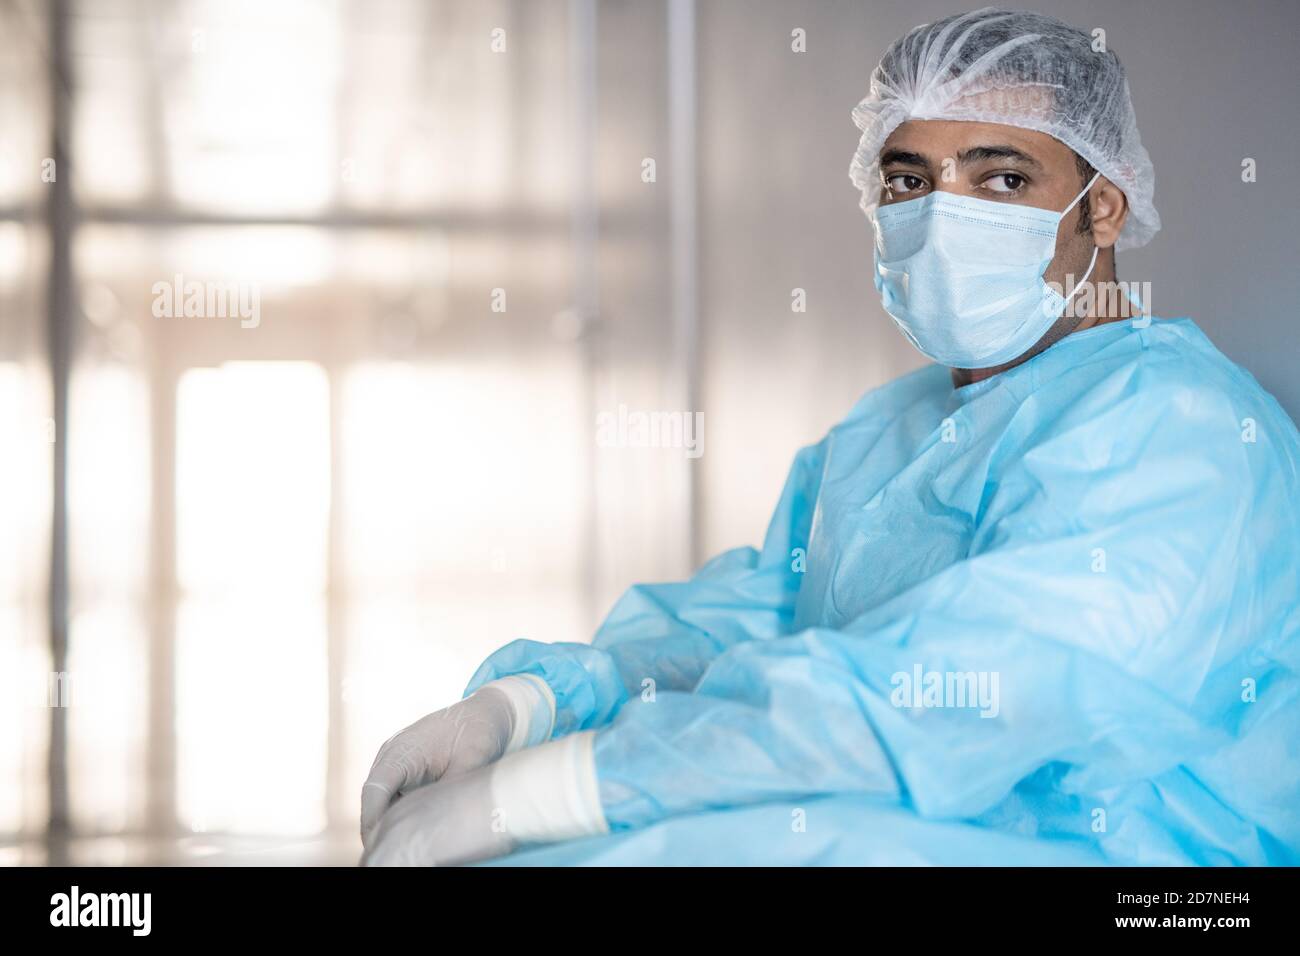 Erschöpfter männlicher Chirurg in schützender Arbeitskleidung, die sich gegen die Wand lehnt Korridor Stockfoto